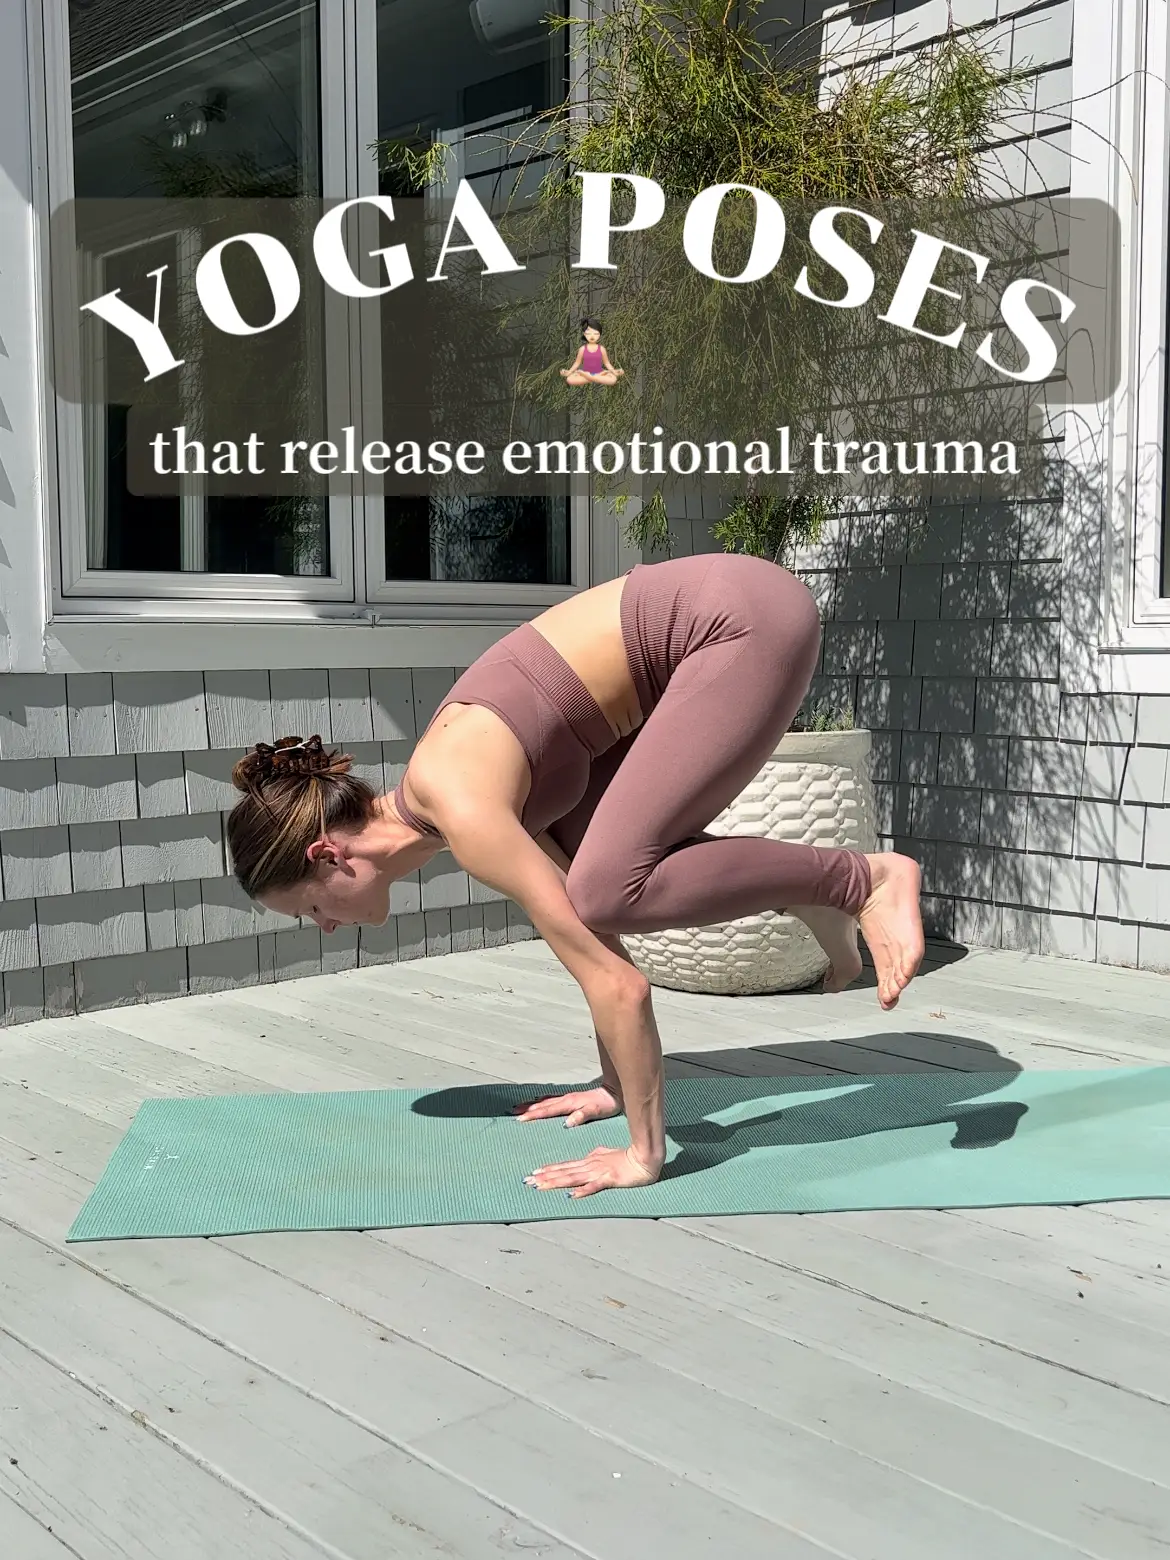 release emotional trauma through yoga